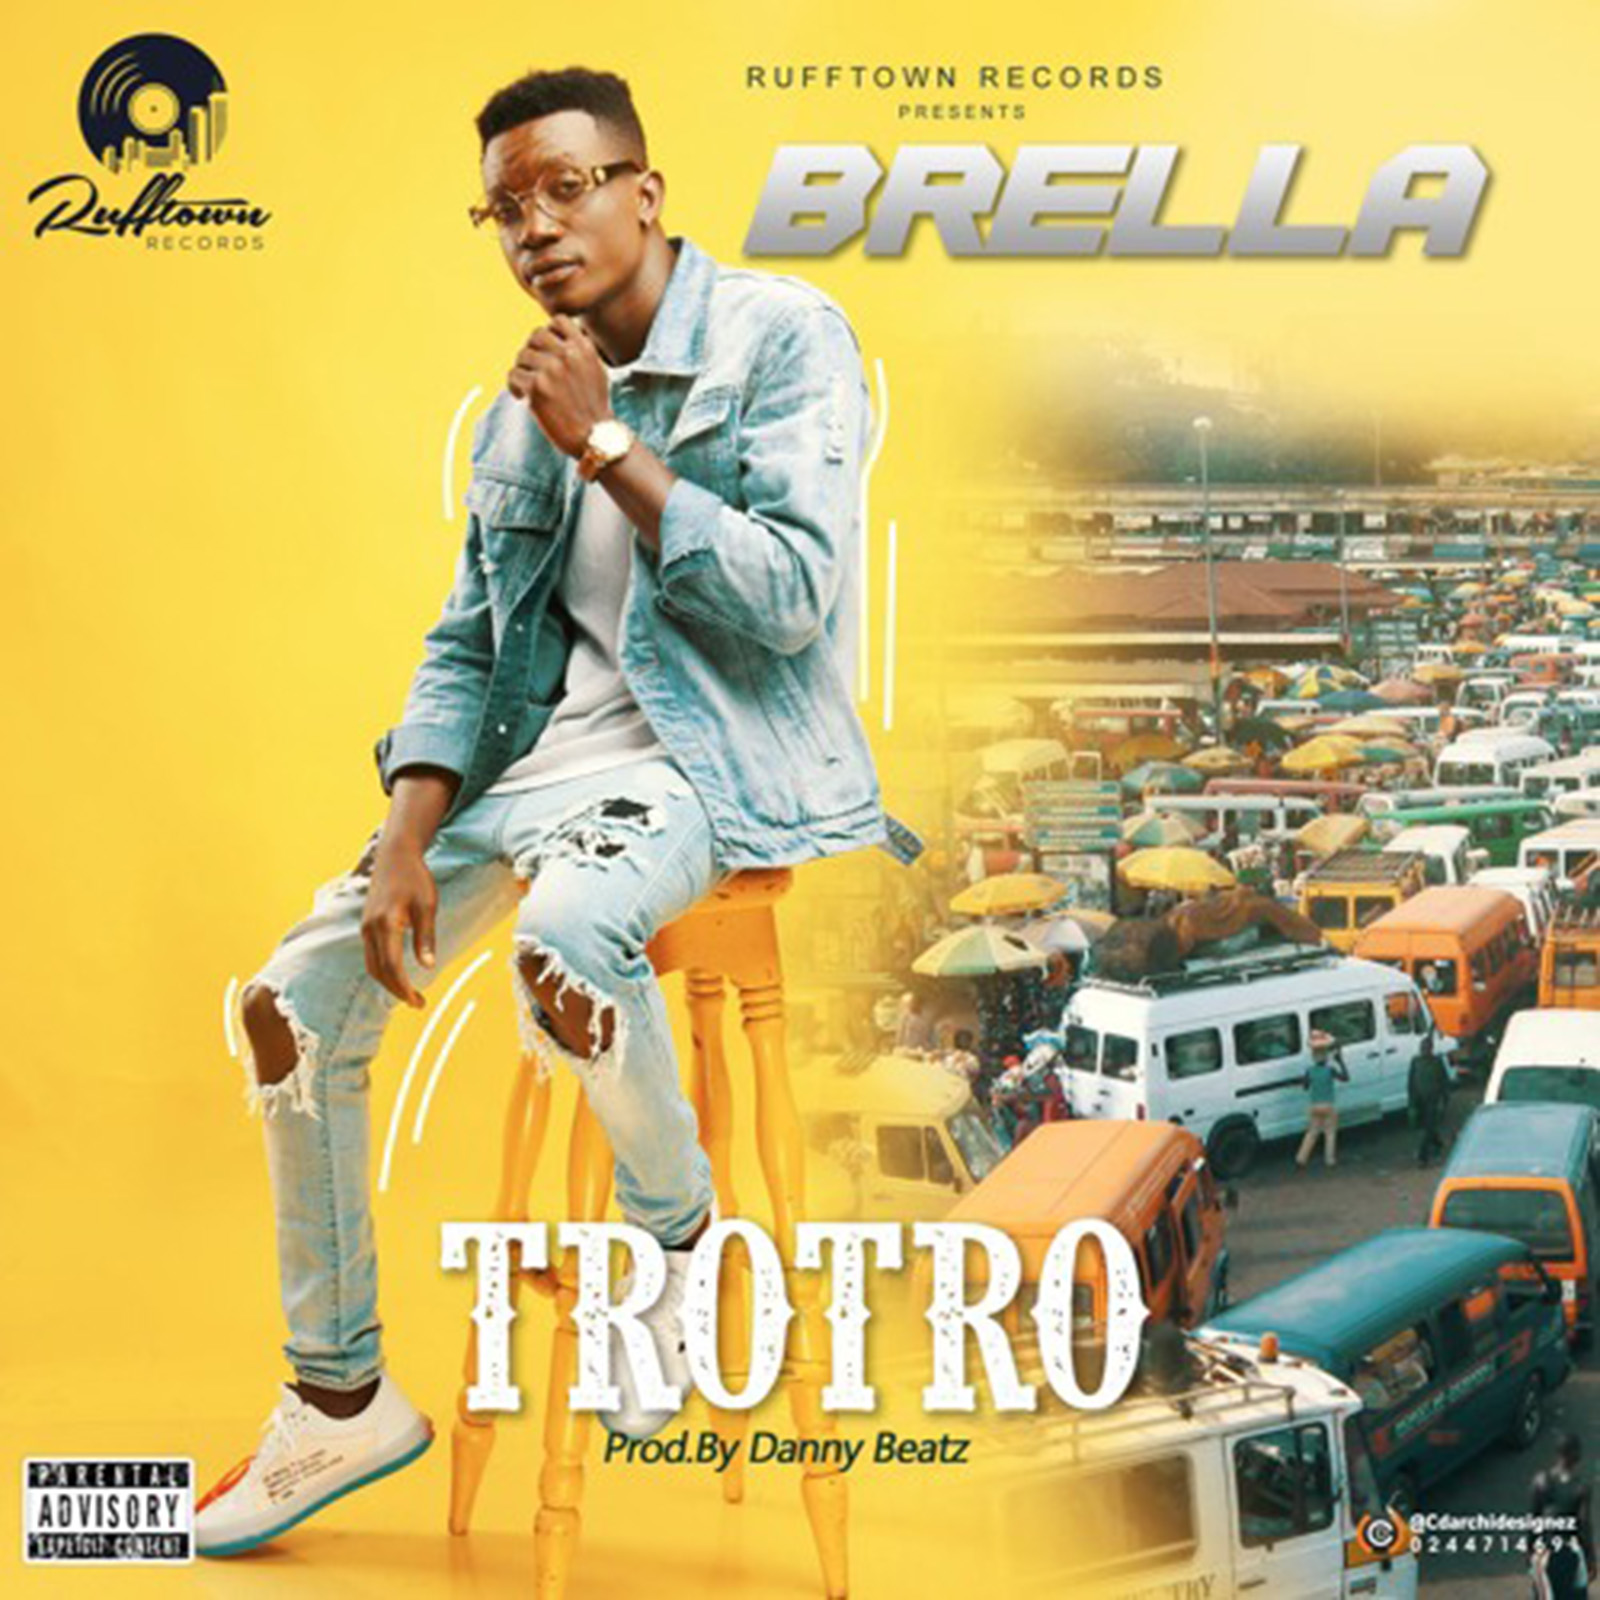 Trotro by Brella